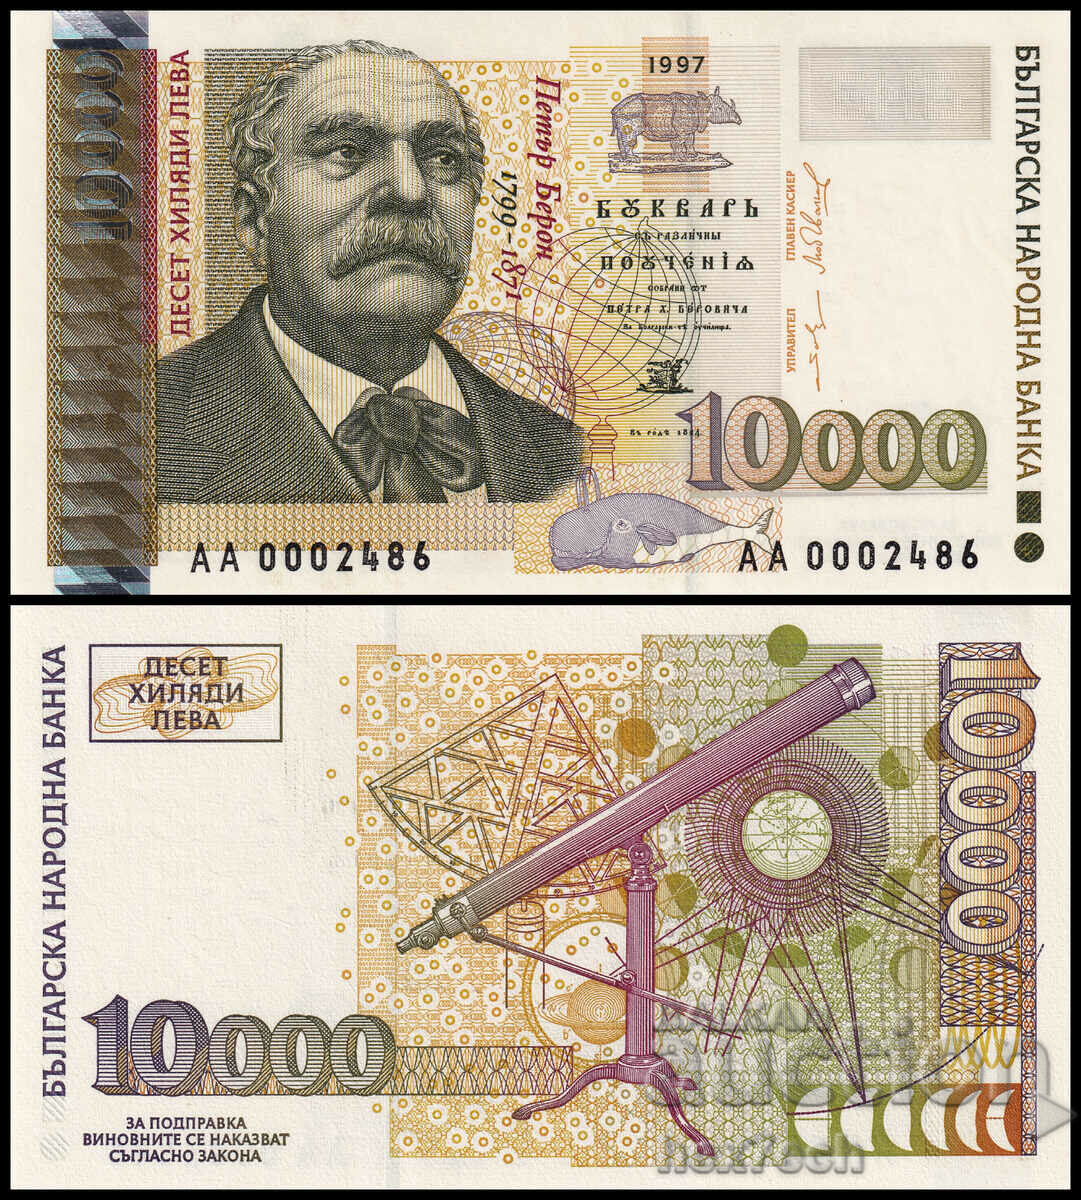 ❤️ ⭐ Βουλγαρία 1997 10000 BGN UNC νέο ⭐ ❤️